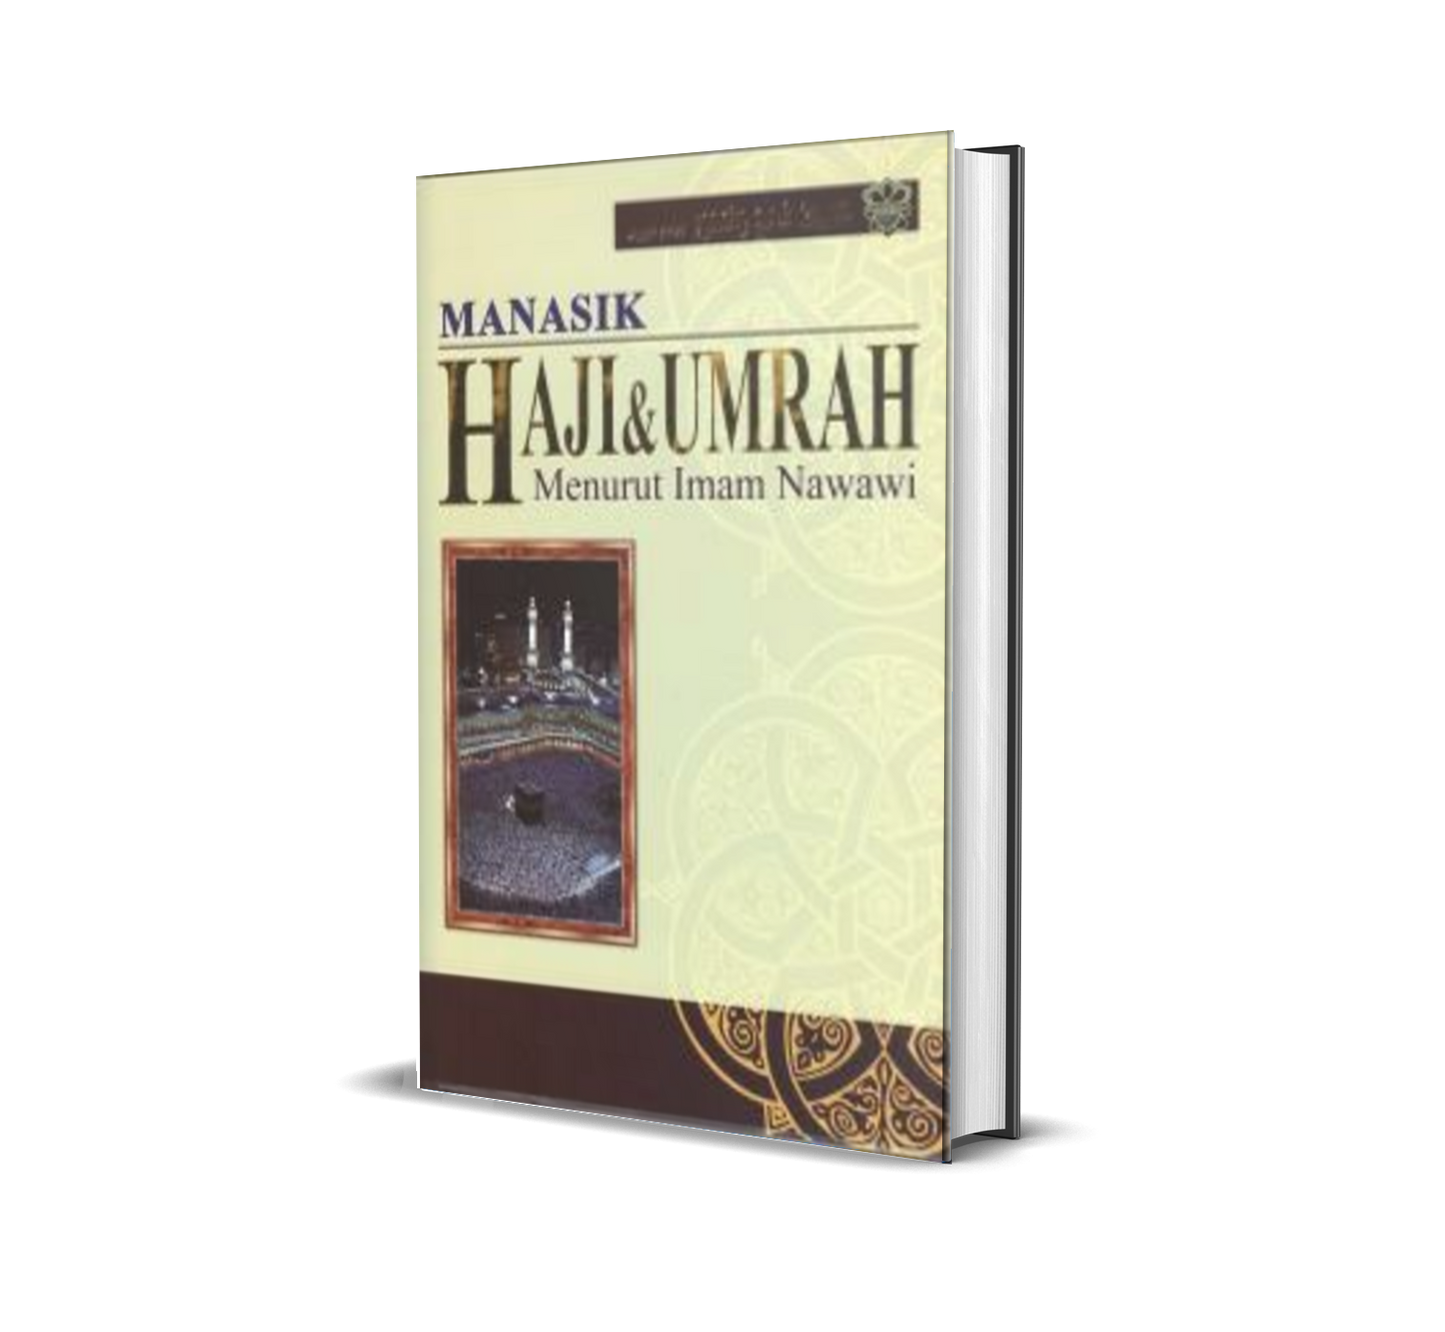 Manasik Haji & Umrah Menurut Imam Nawawi